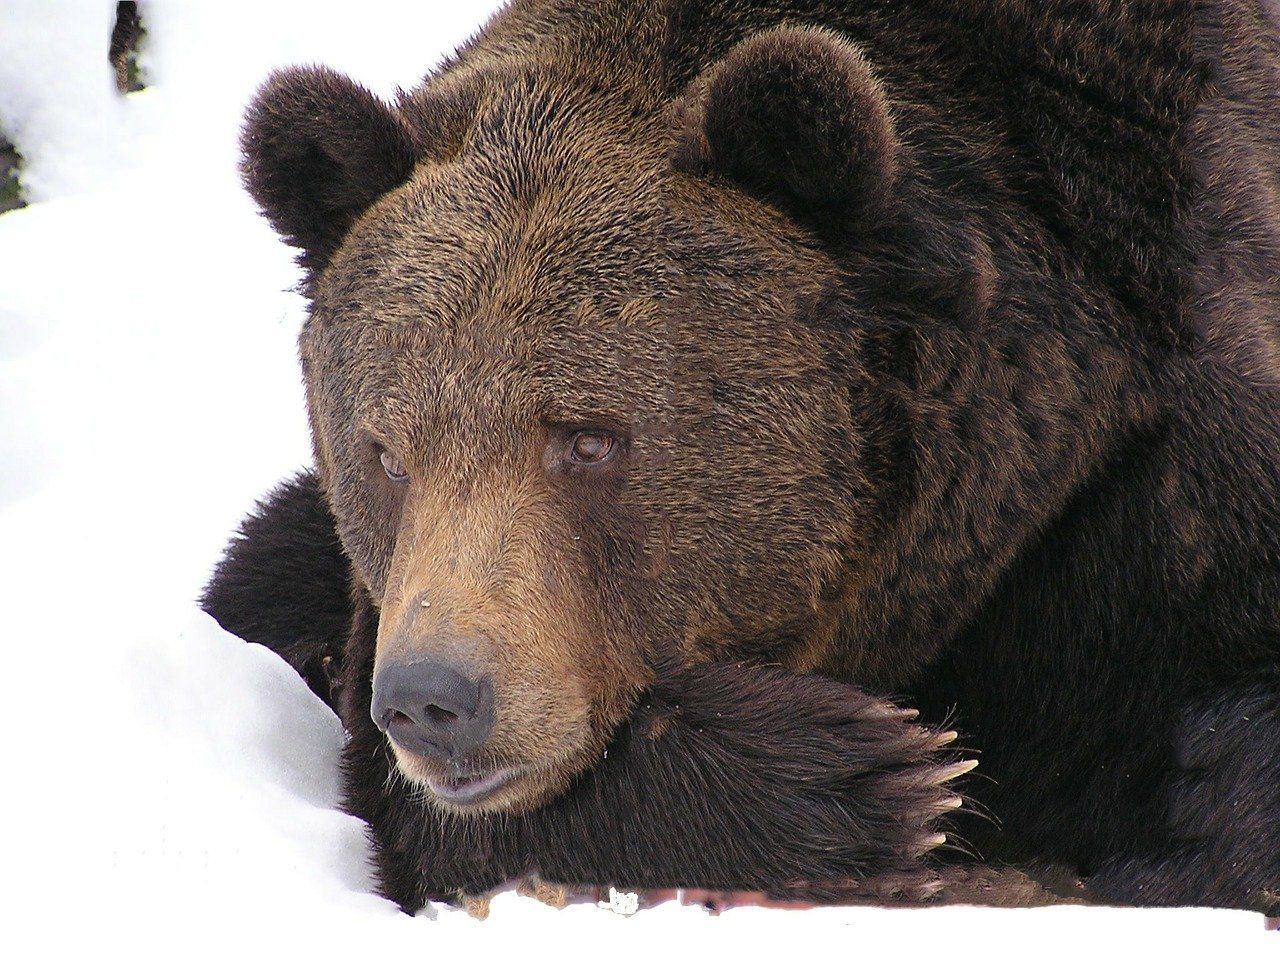 

Житель Приморья смог спастись от ранившей его медведицы

